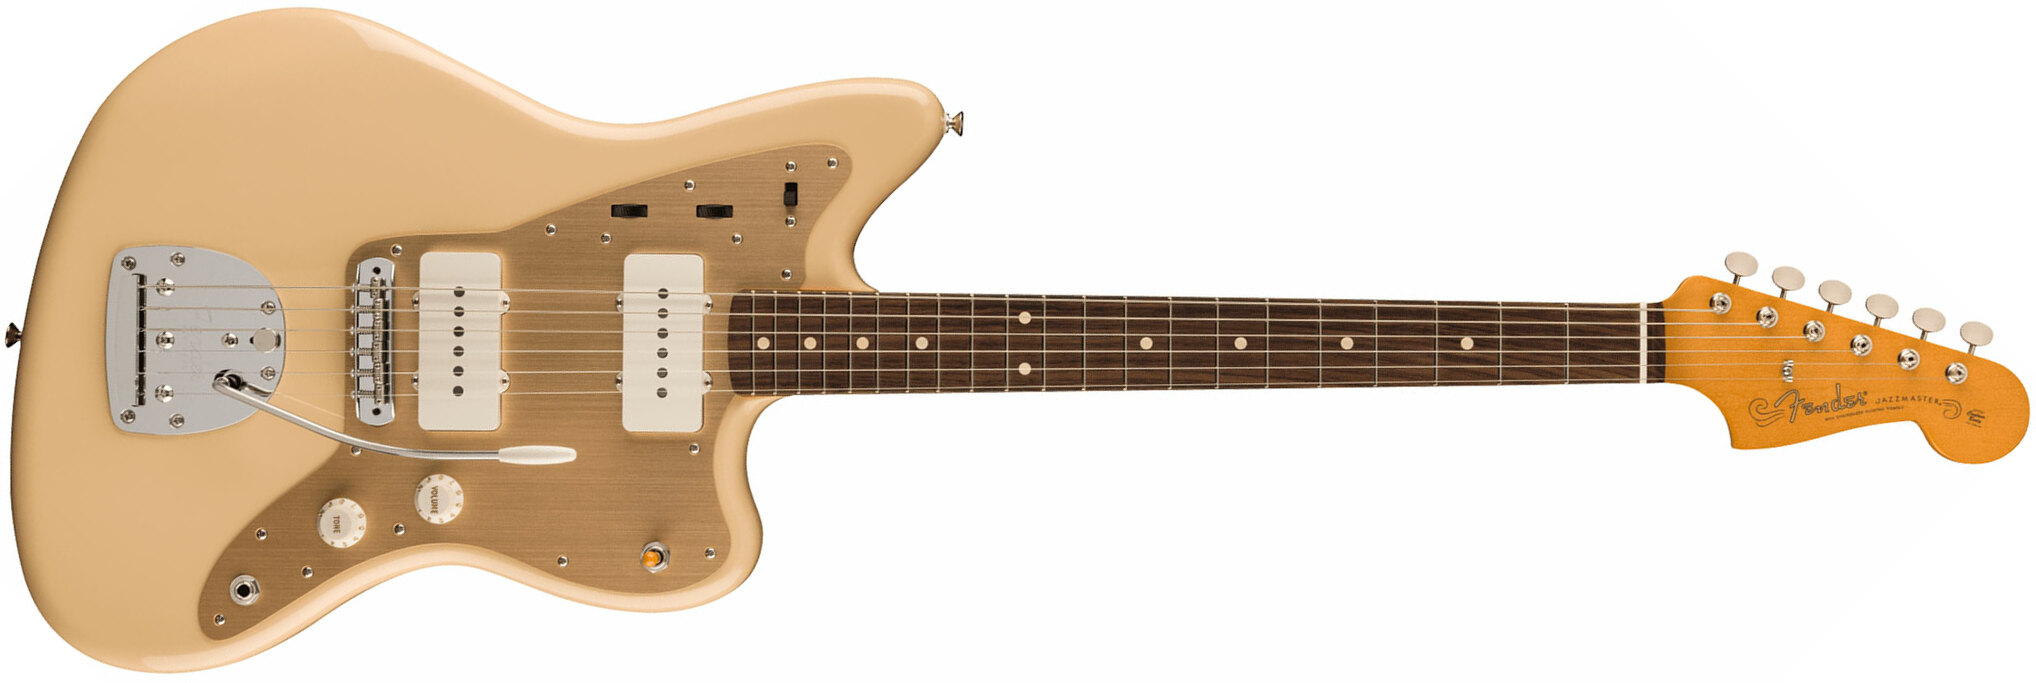 Fender Jazzmaster 50s Vintera 2 Mex 2s Trem Rw - Desert Sand - Retro-rock elektrische gitaar - Main picture